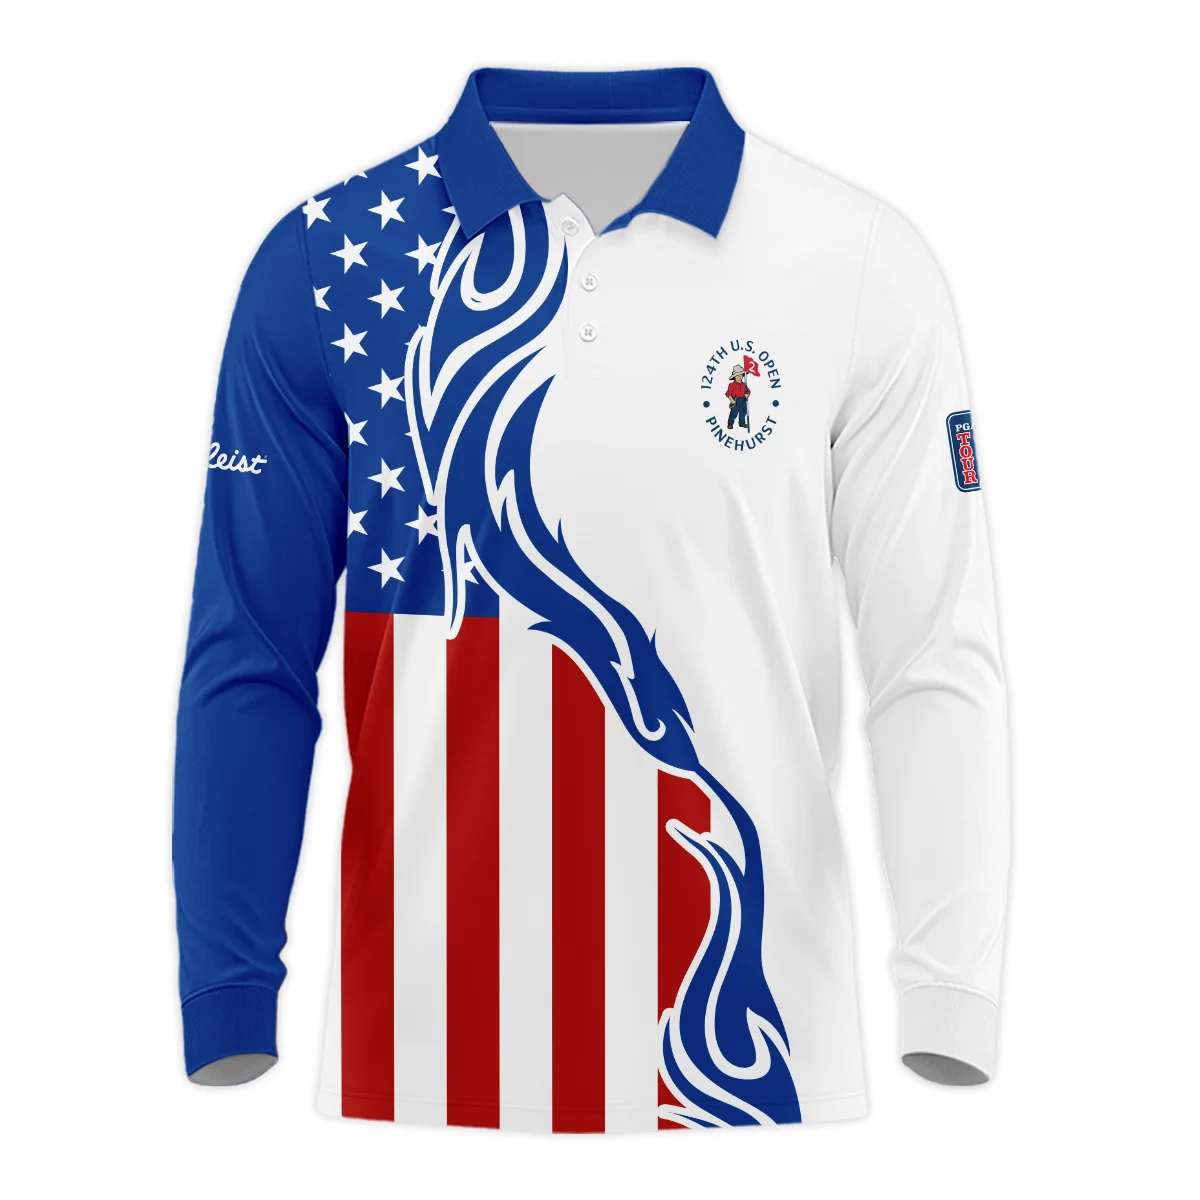 Golf Sport Titleist 124th U.S. Open Pinehurst Long Polo Shirt USA Flag Pattern Blue White All Over Print Long Polo Shirt For Men